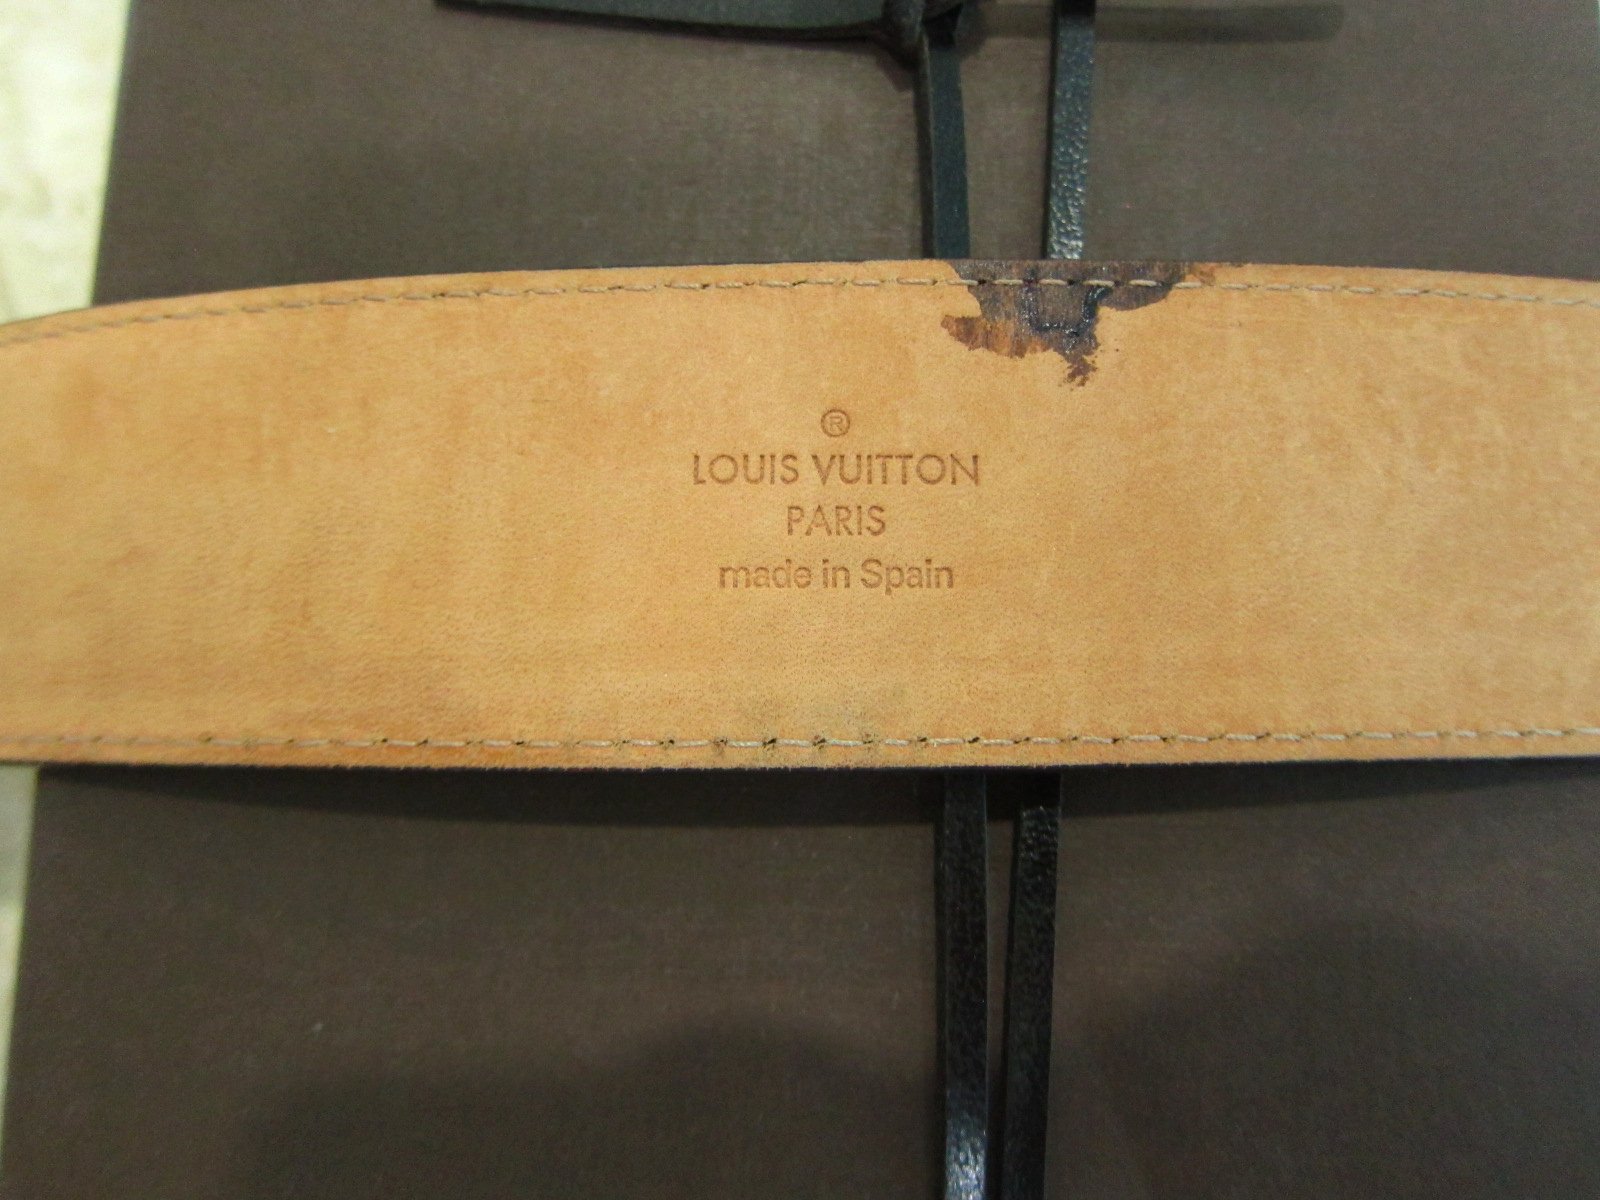 Louis Vuitton Receipt Template Inspirational Louis Vuitton Belt Receipt Image Belt